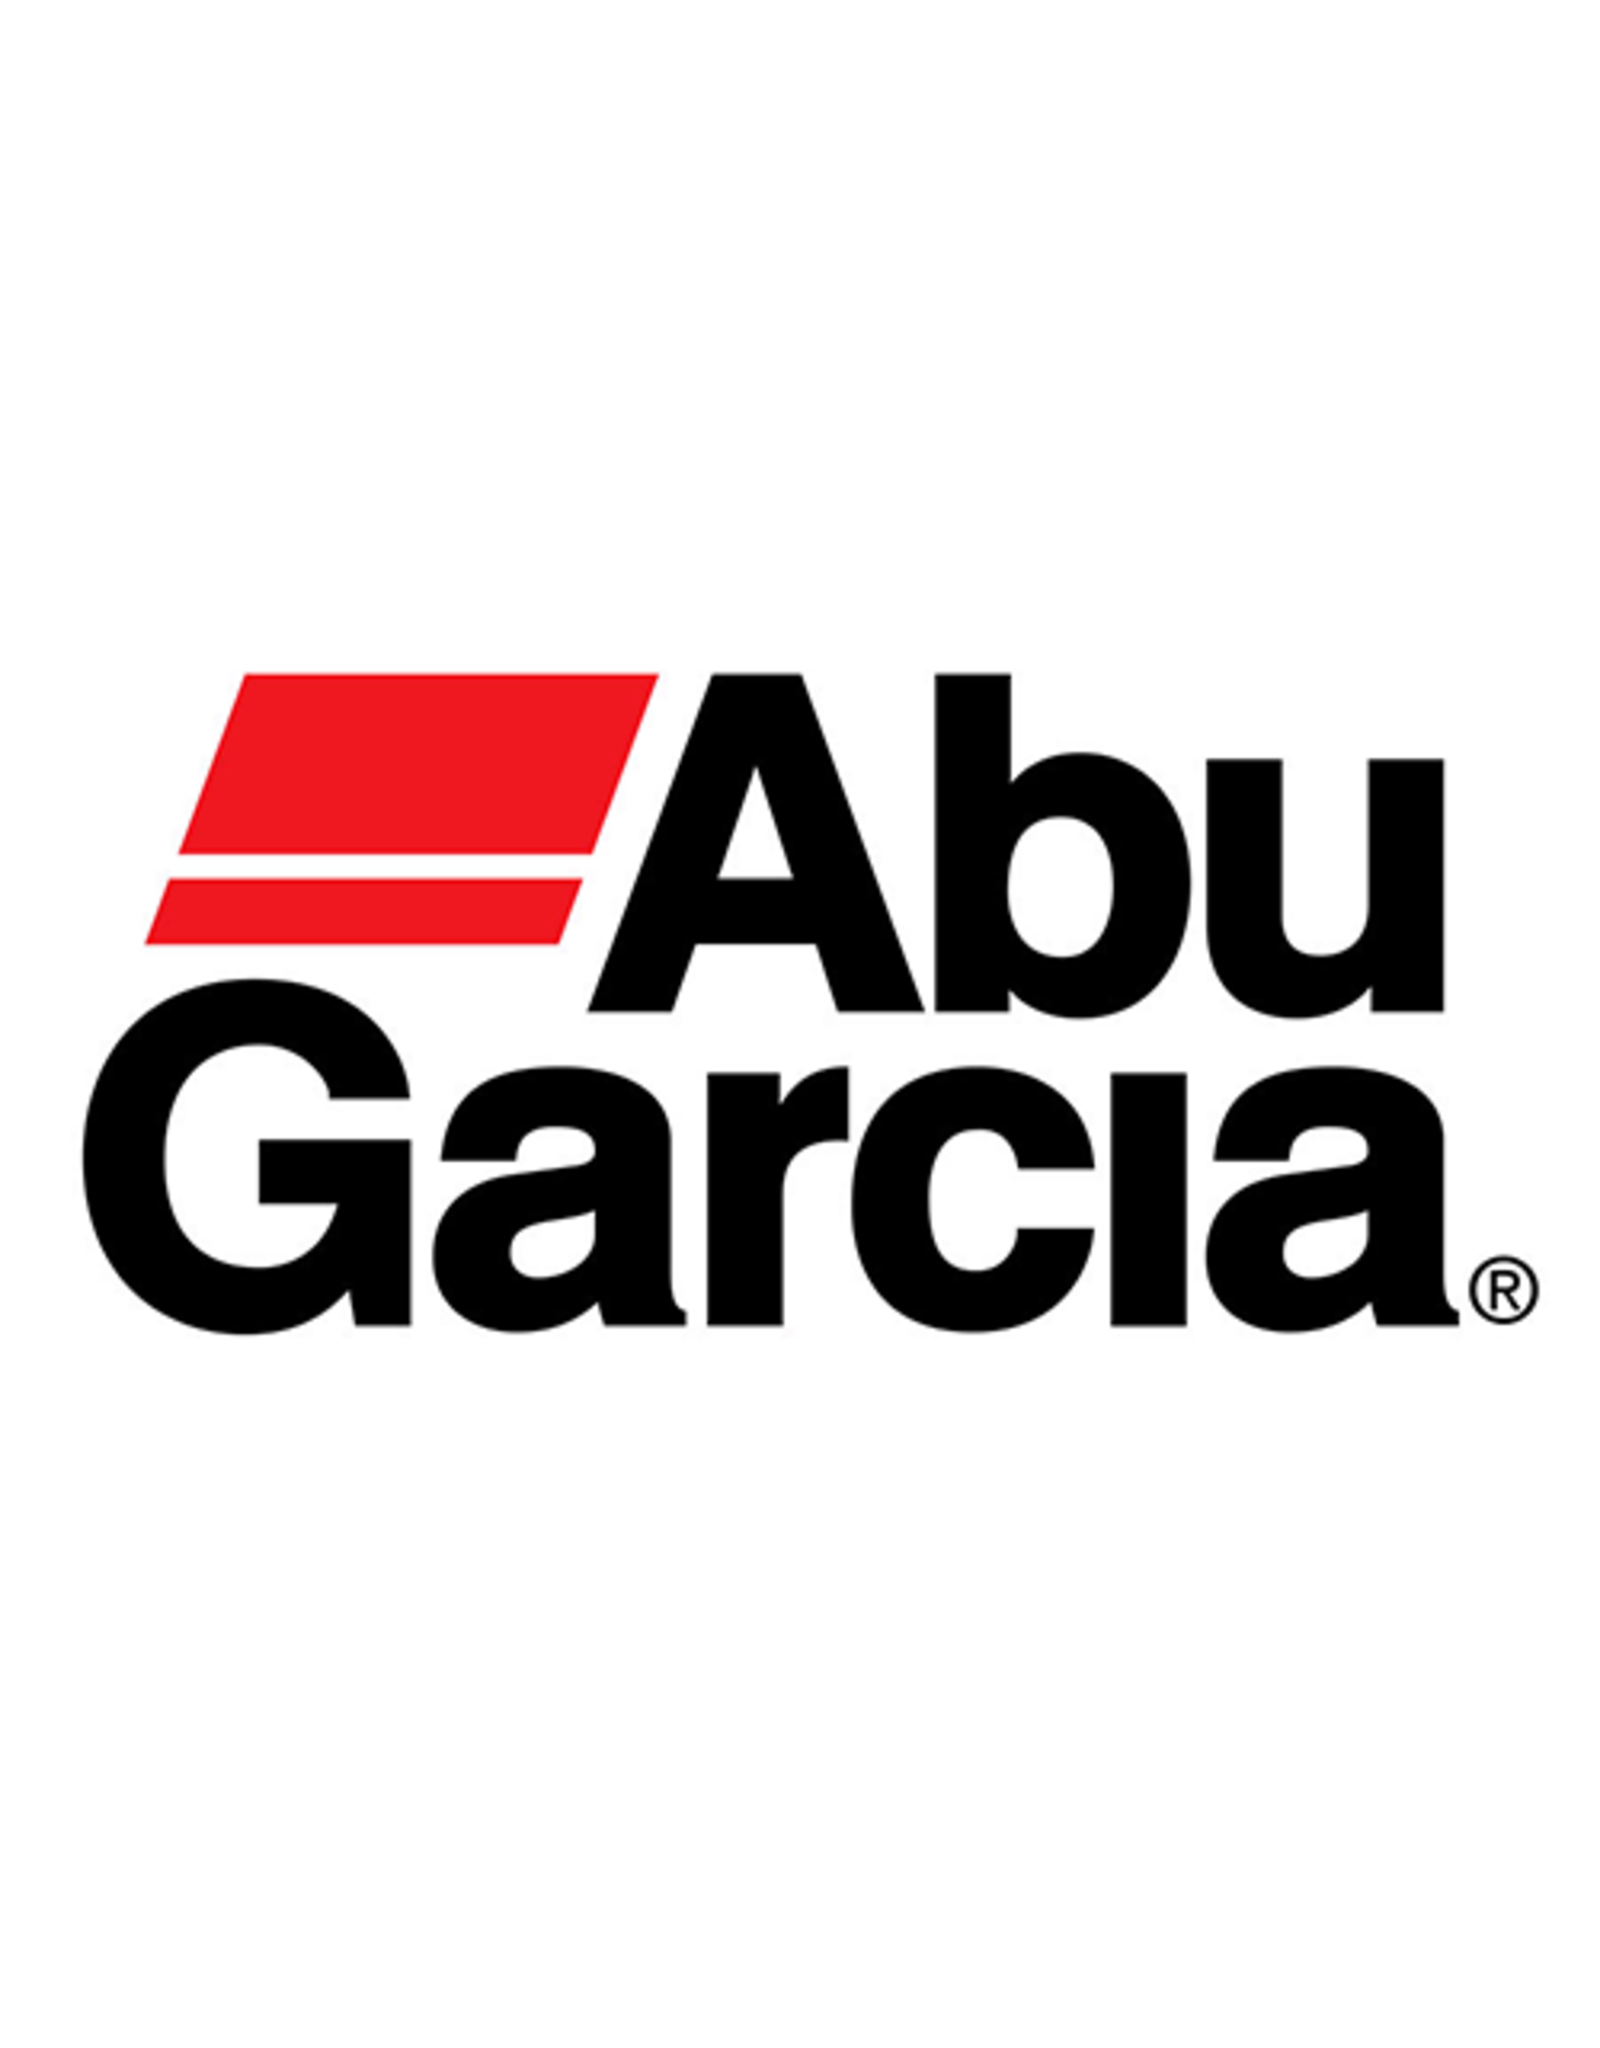 Abu Garcia 81095  HOUSING/NLA